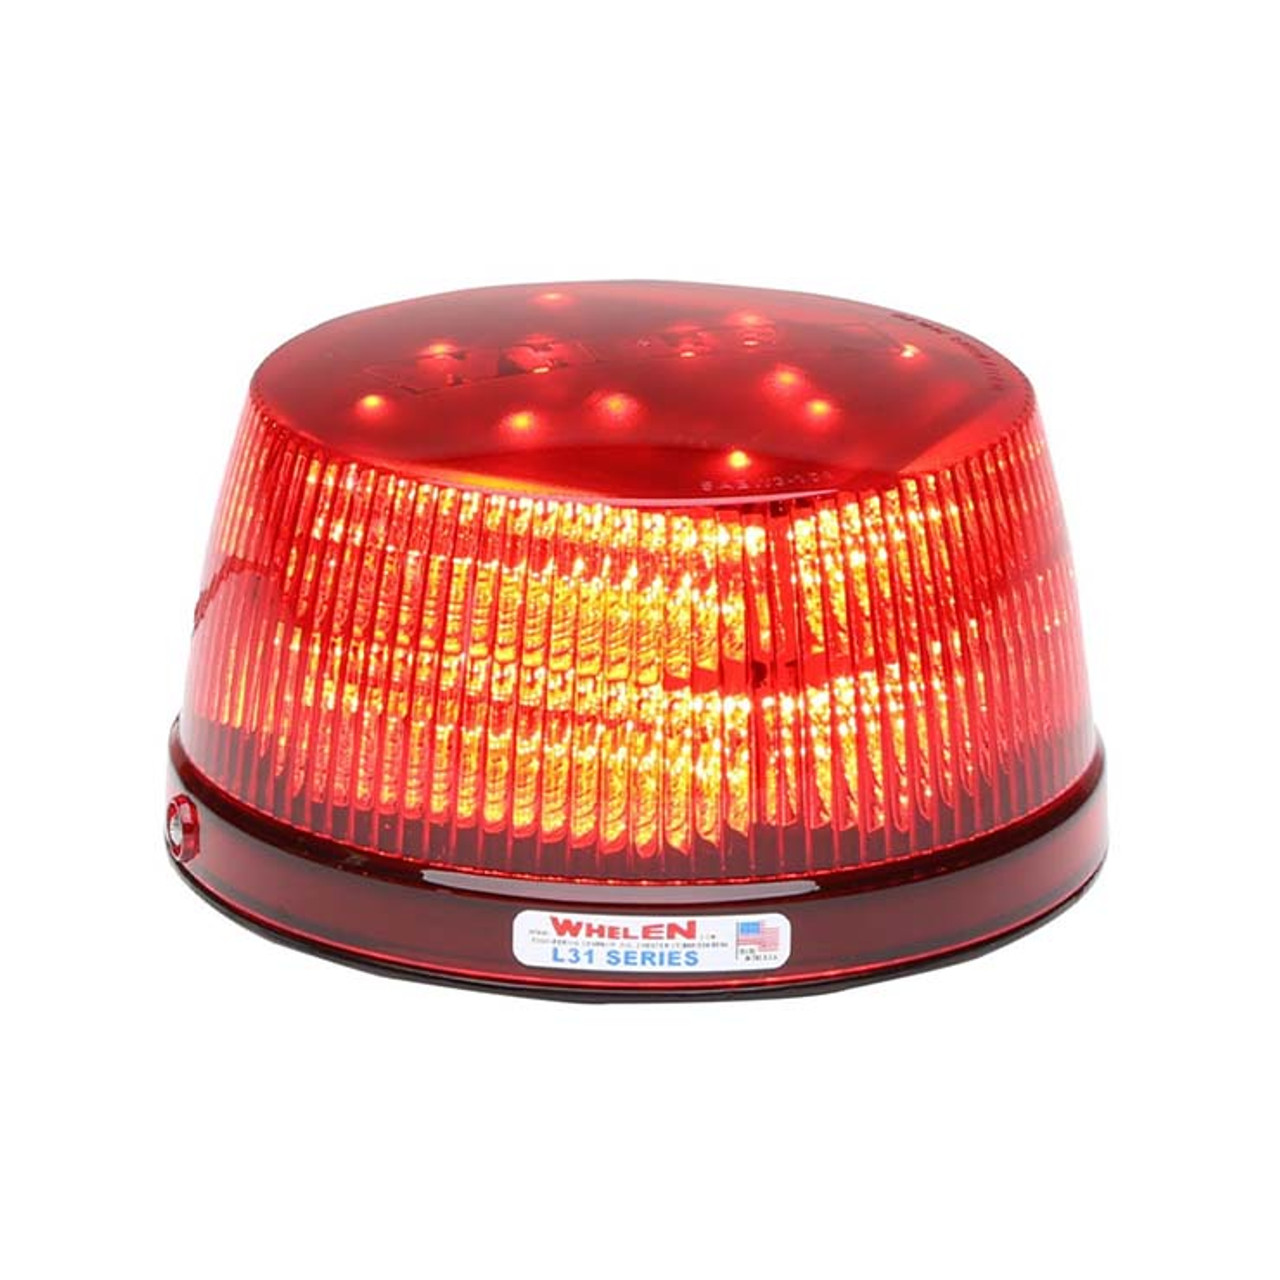 Whelen Red LED Beacon 71080 Series